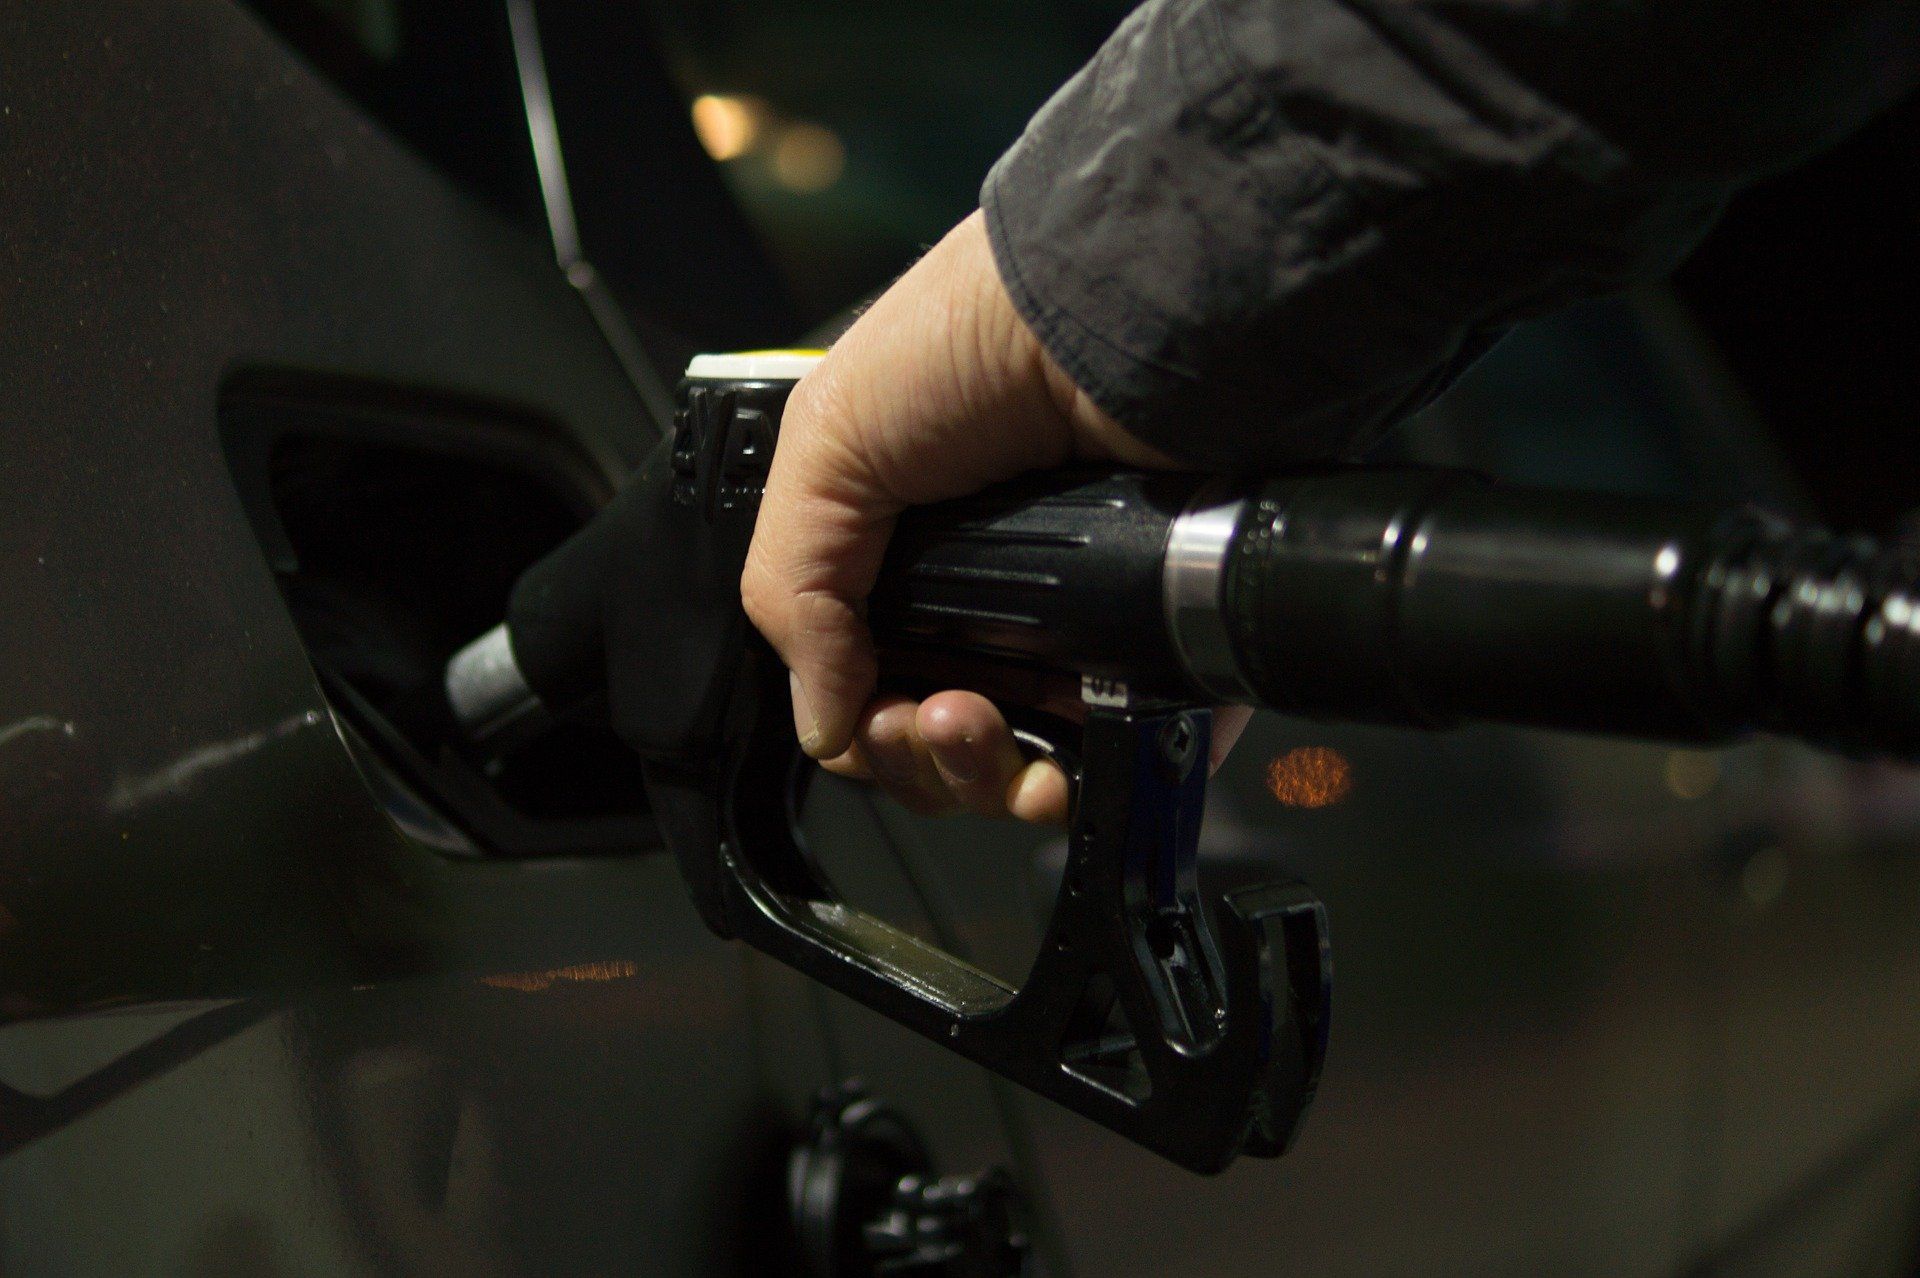 Fuel price August 10, 2022: Petrol Rs 106.31, diesel Rs 94.27 in Mumbai